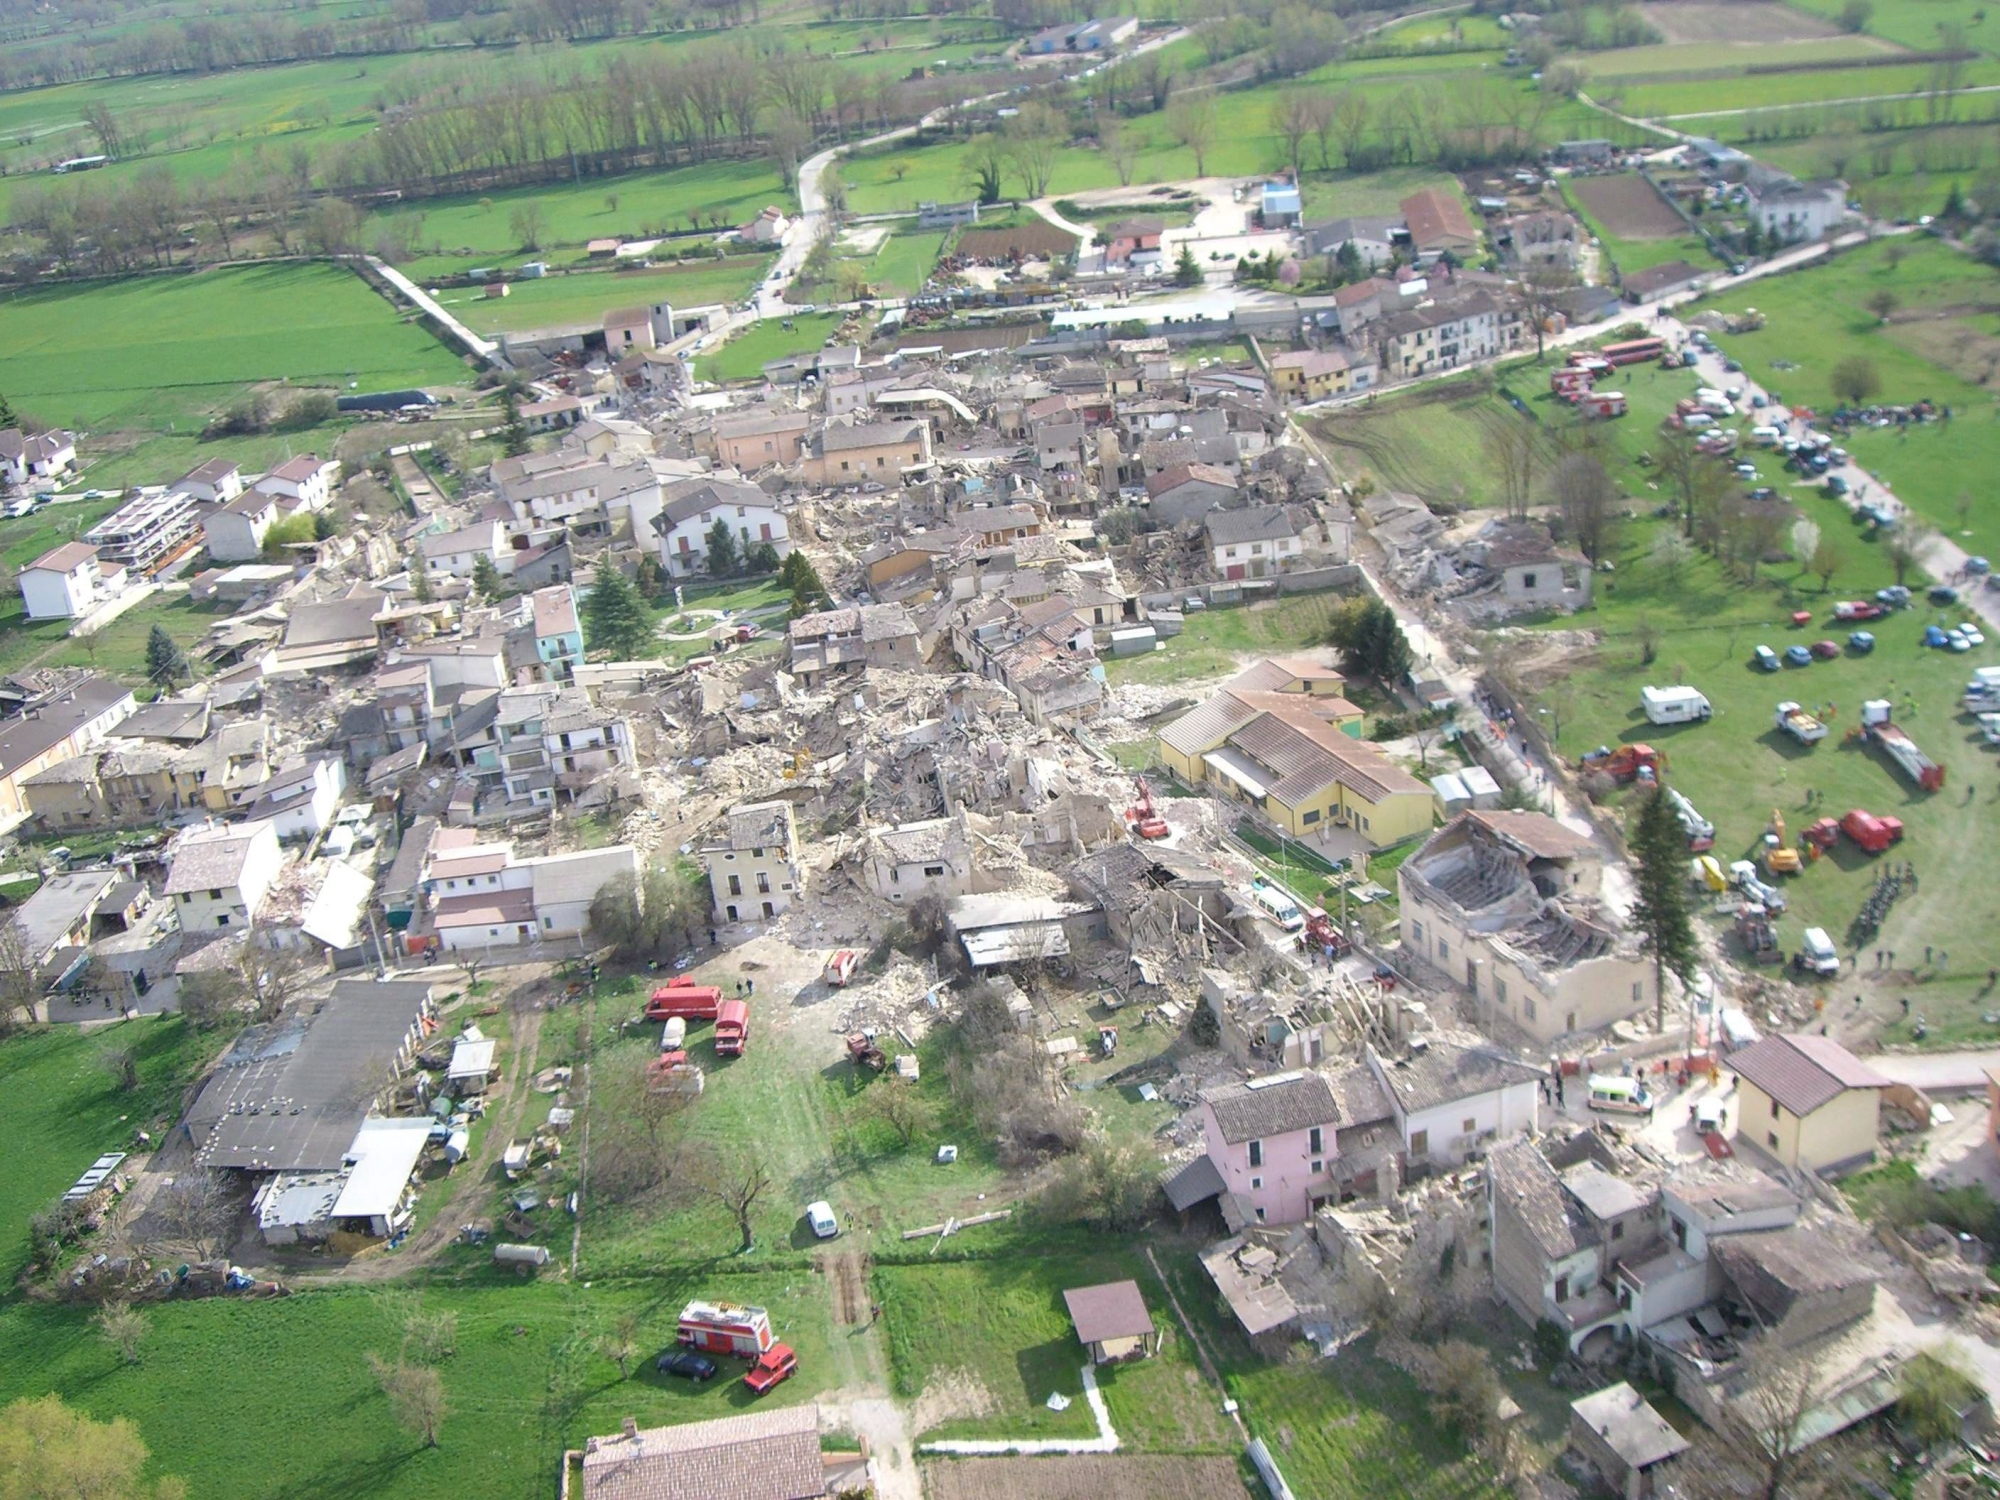 Le séisme de 2009 dans la région de l’Aquila, en Italie, avait fait 309 morts. Par la géologie et la densité de population, il constitue le scénario de référence pour le Valais.